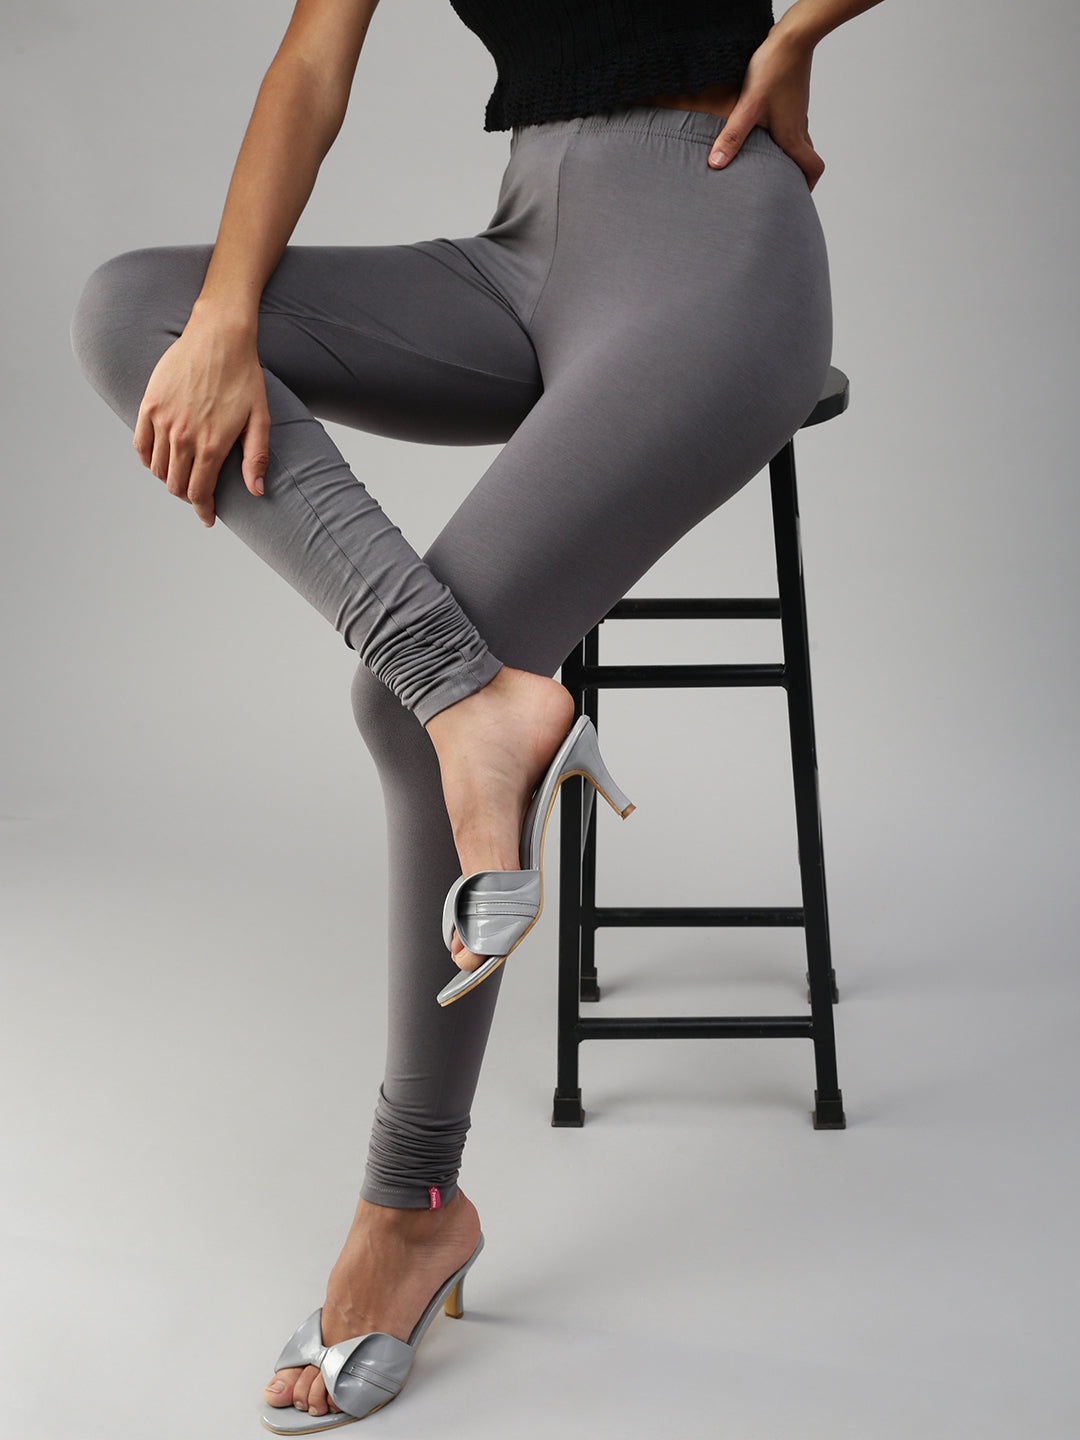 Dressy Legging | Shop Sustainable, Ethical Clothing for Women – Encircled